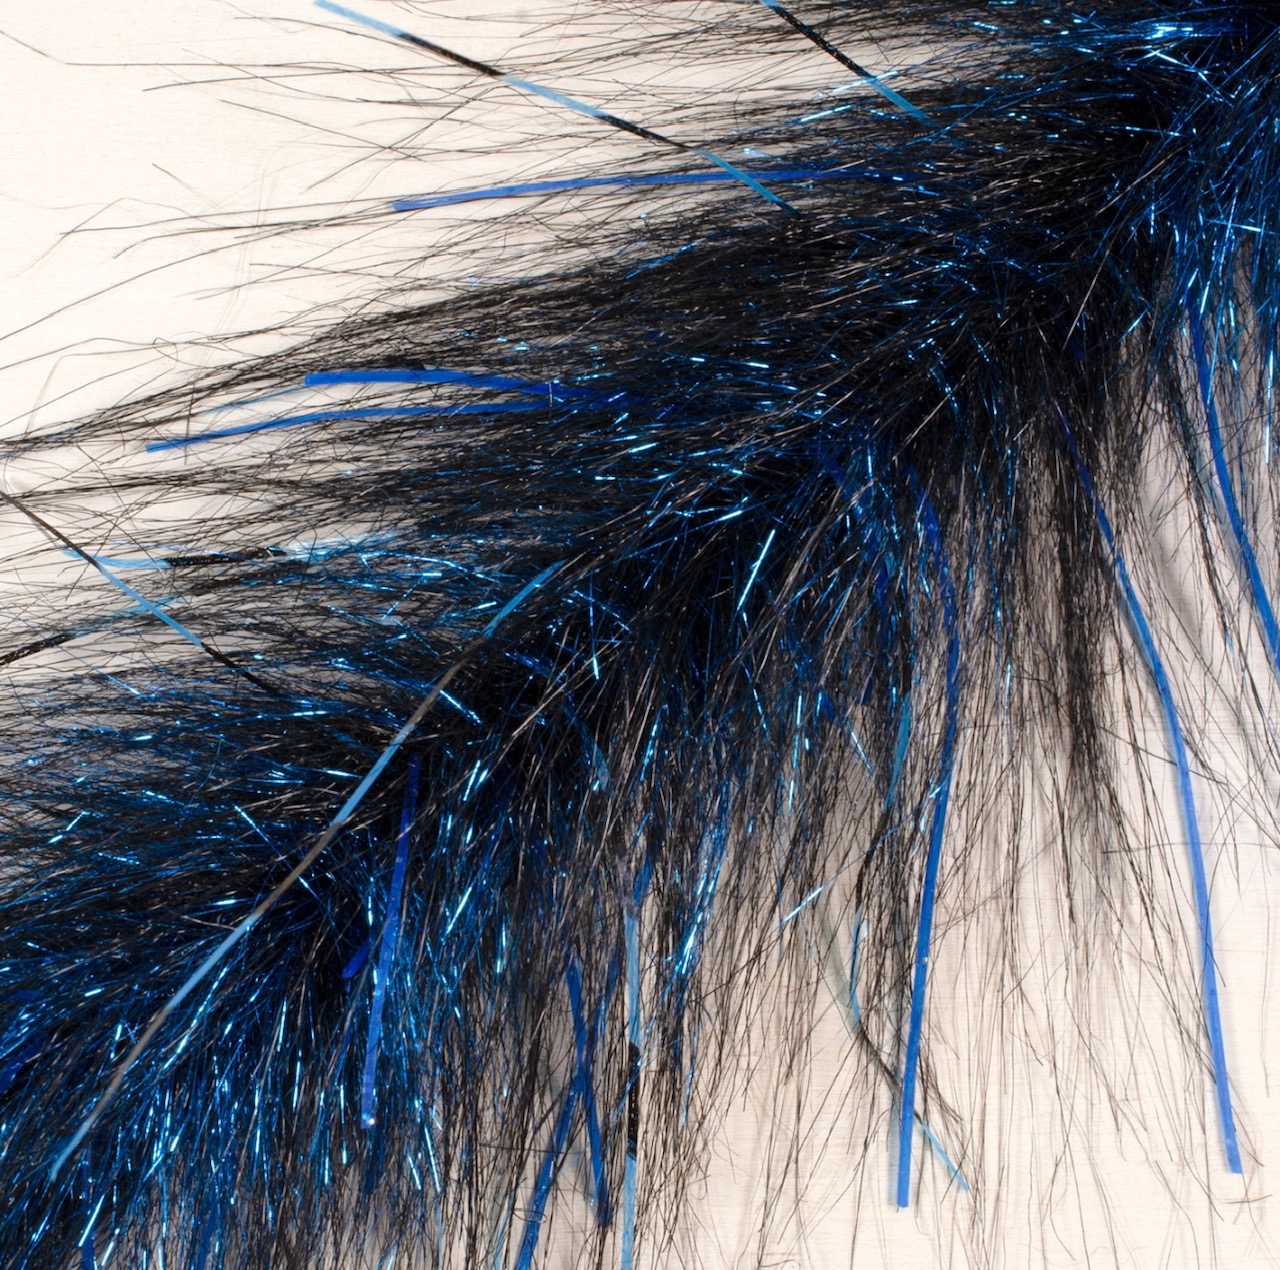 Fair Flies 5D Brushes - Steely Blue